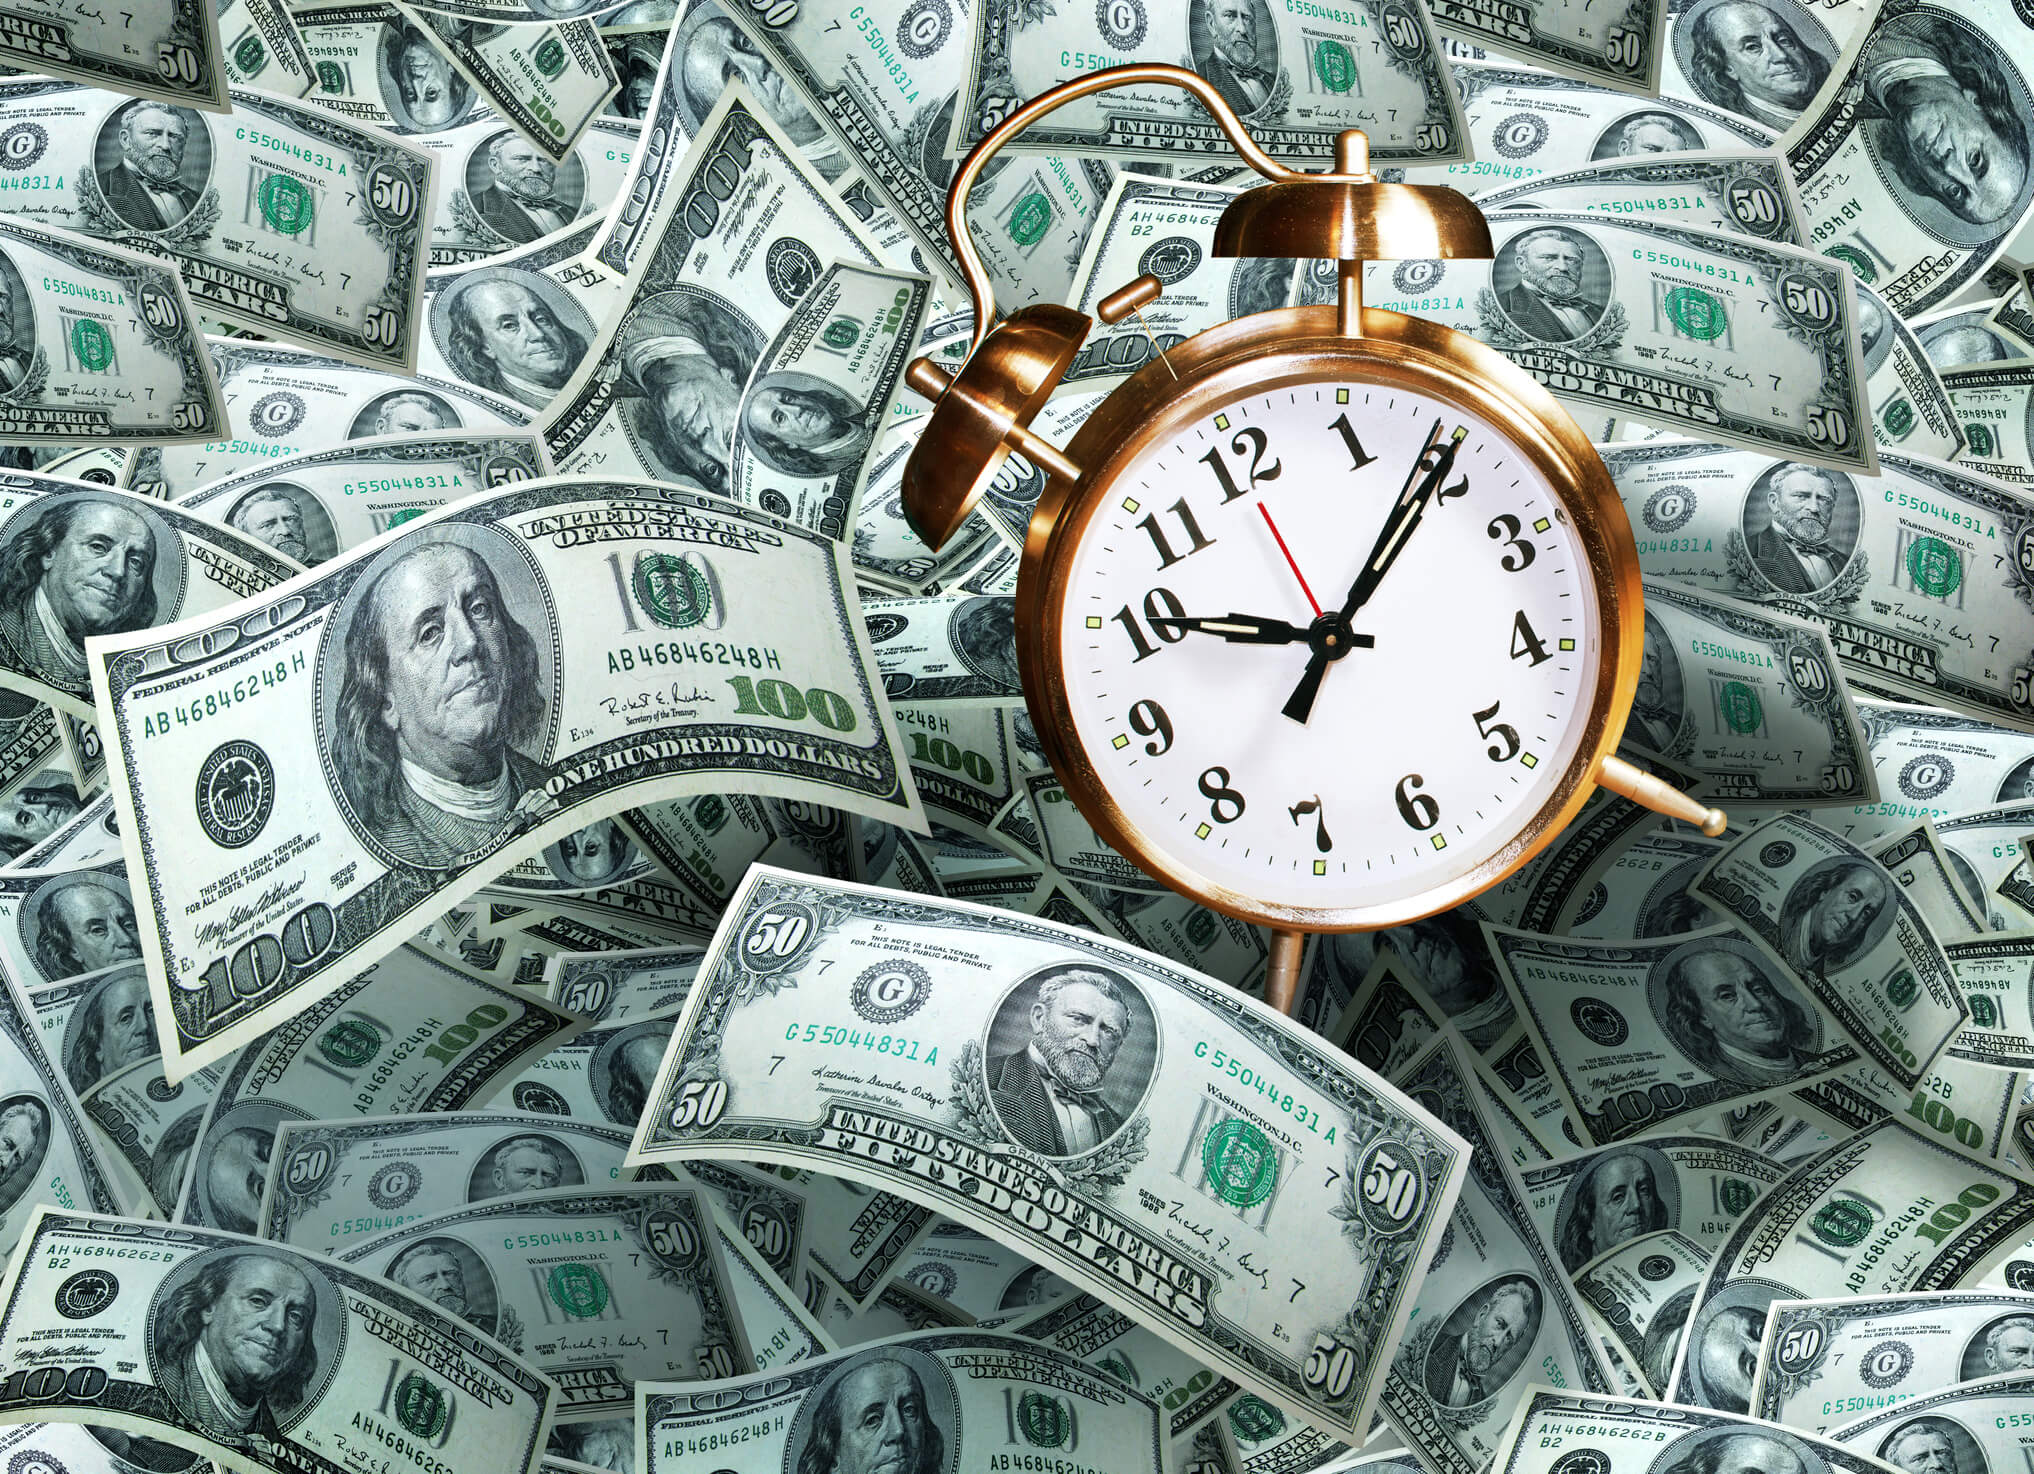 Подкаст время и деньги. Часы и деньги. Время - деньги. Экономия времени и денег. Фон время деньги.